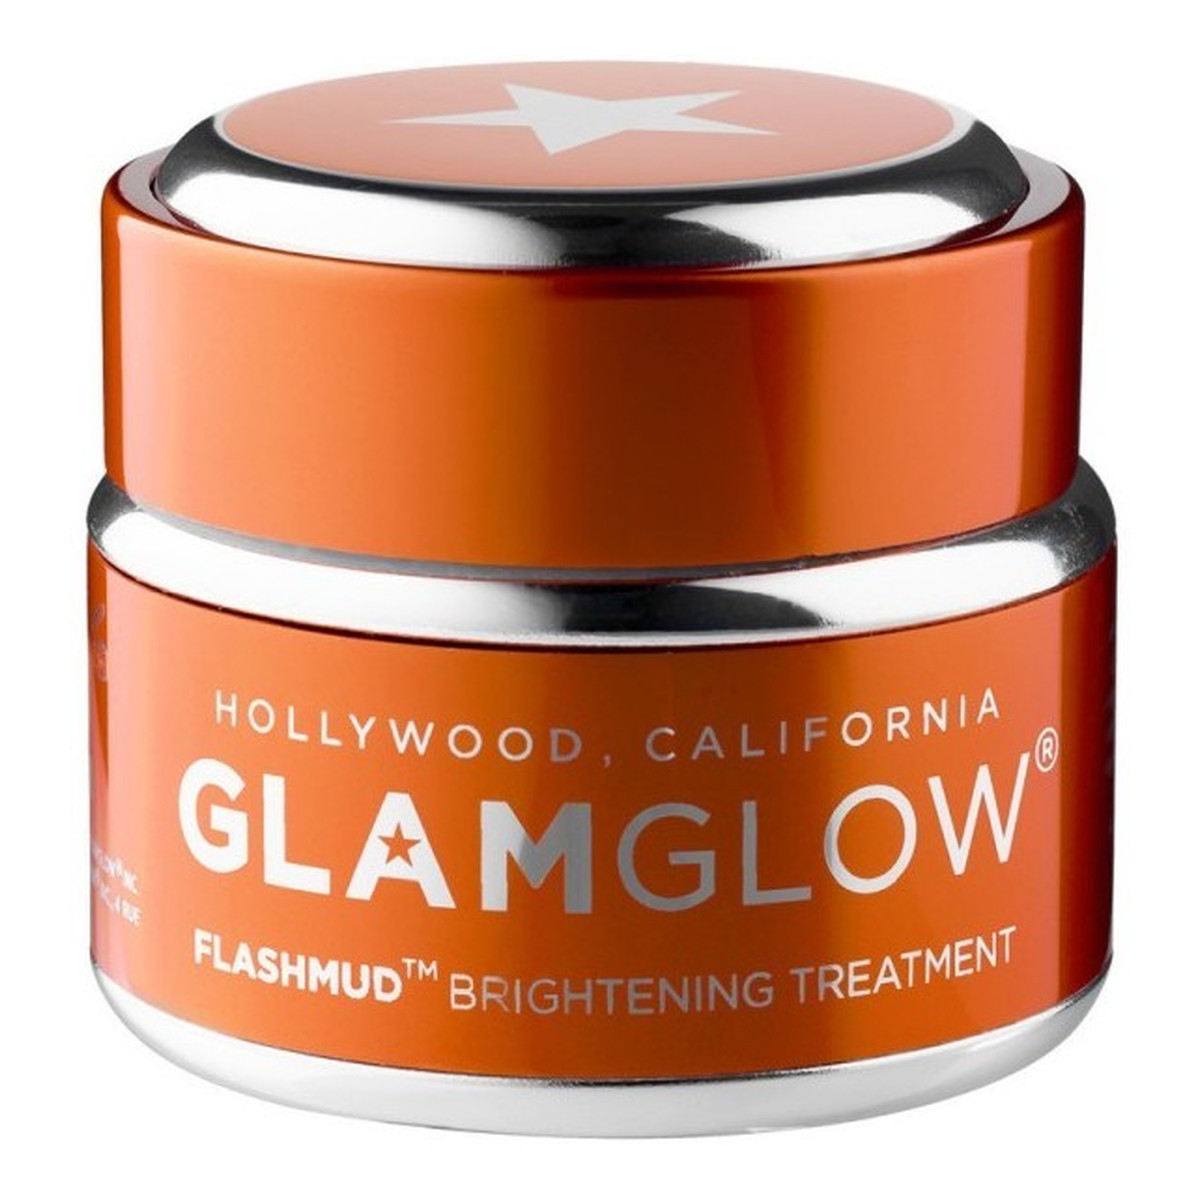 GlamGlow Flashmud Skin Brightening Treatment Kuracja rozświetlająca do twarzy 50g